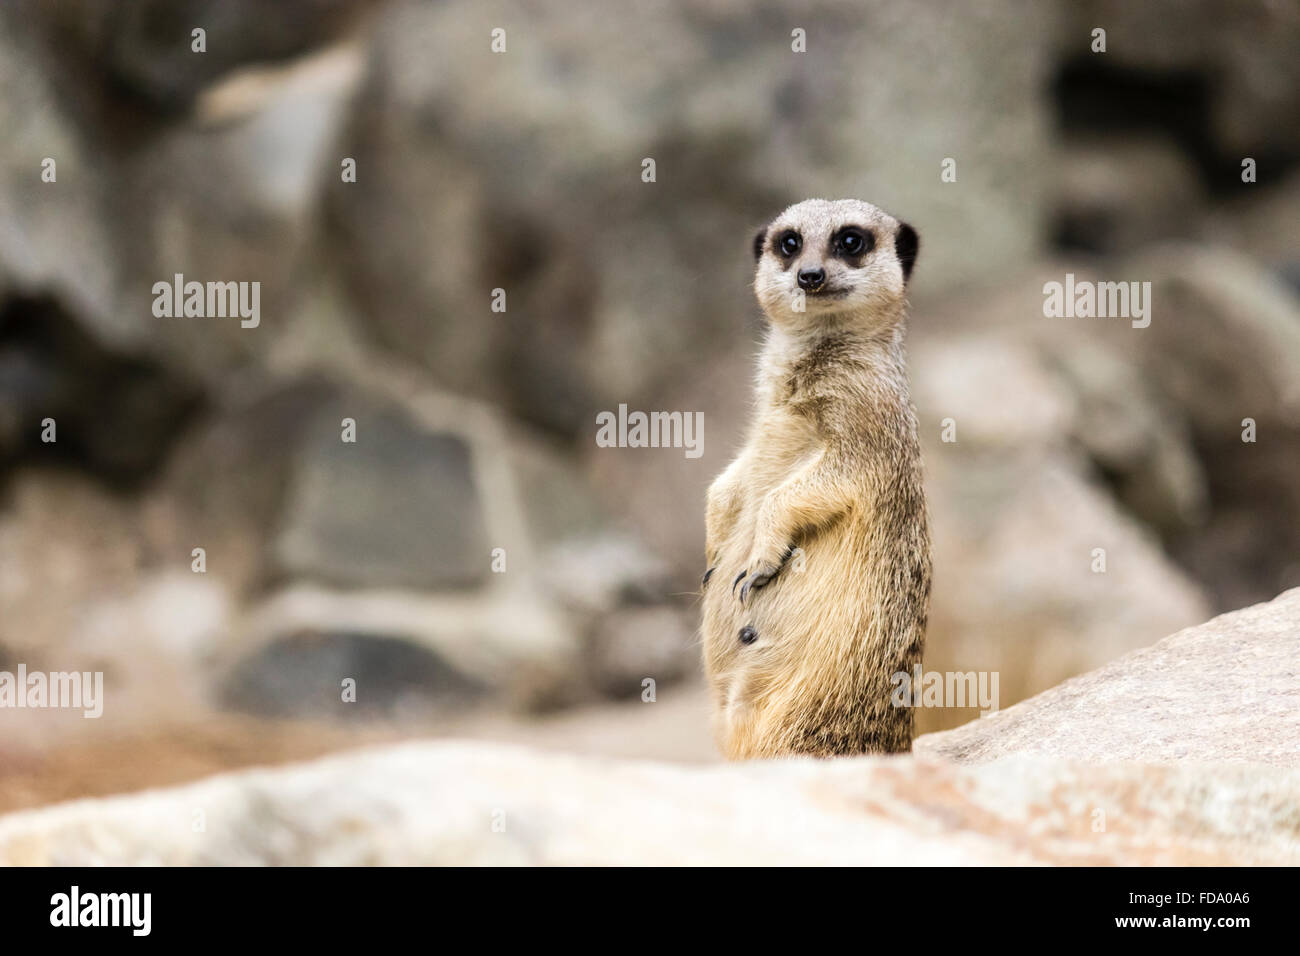 Meerkat landscape Stock Photo